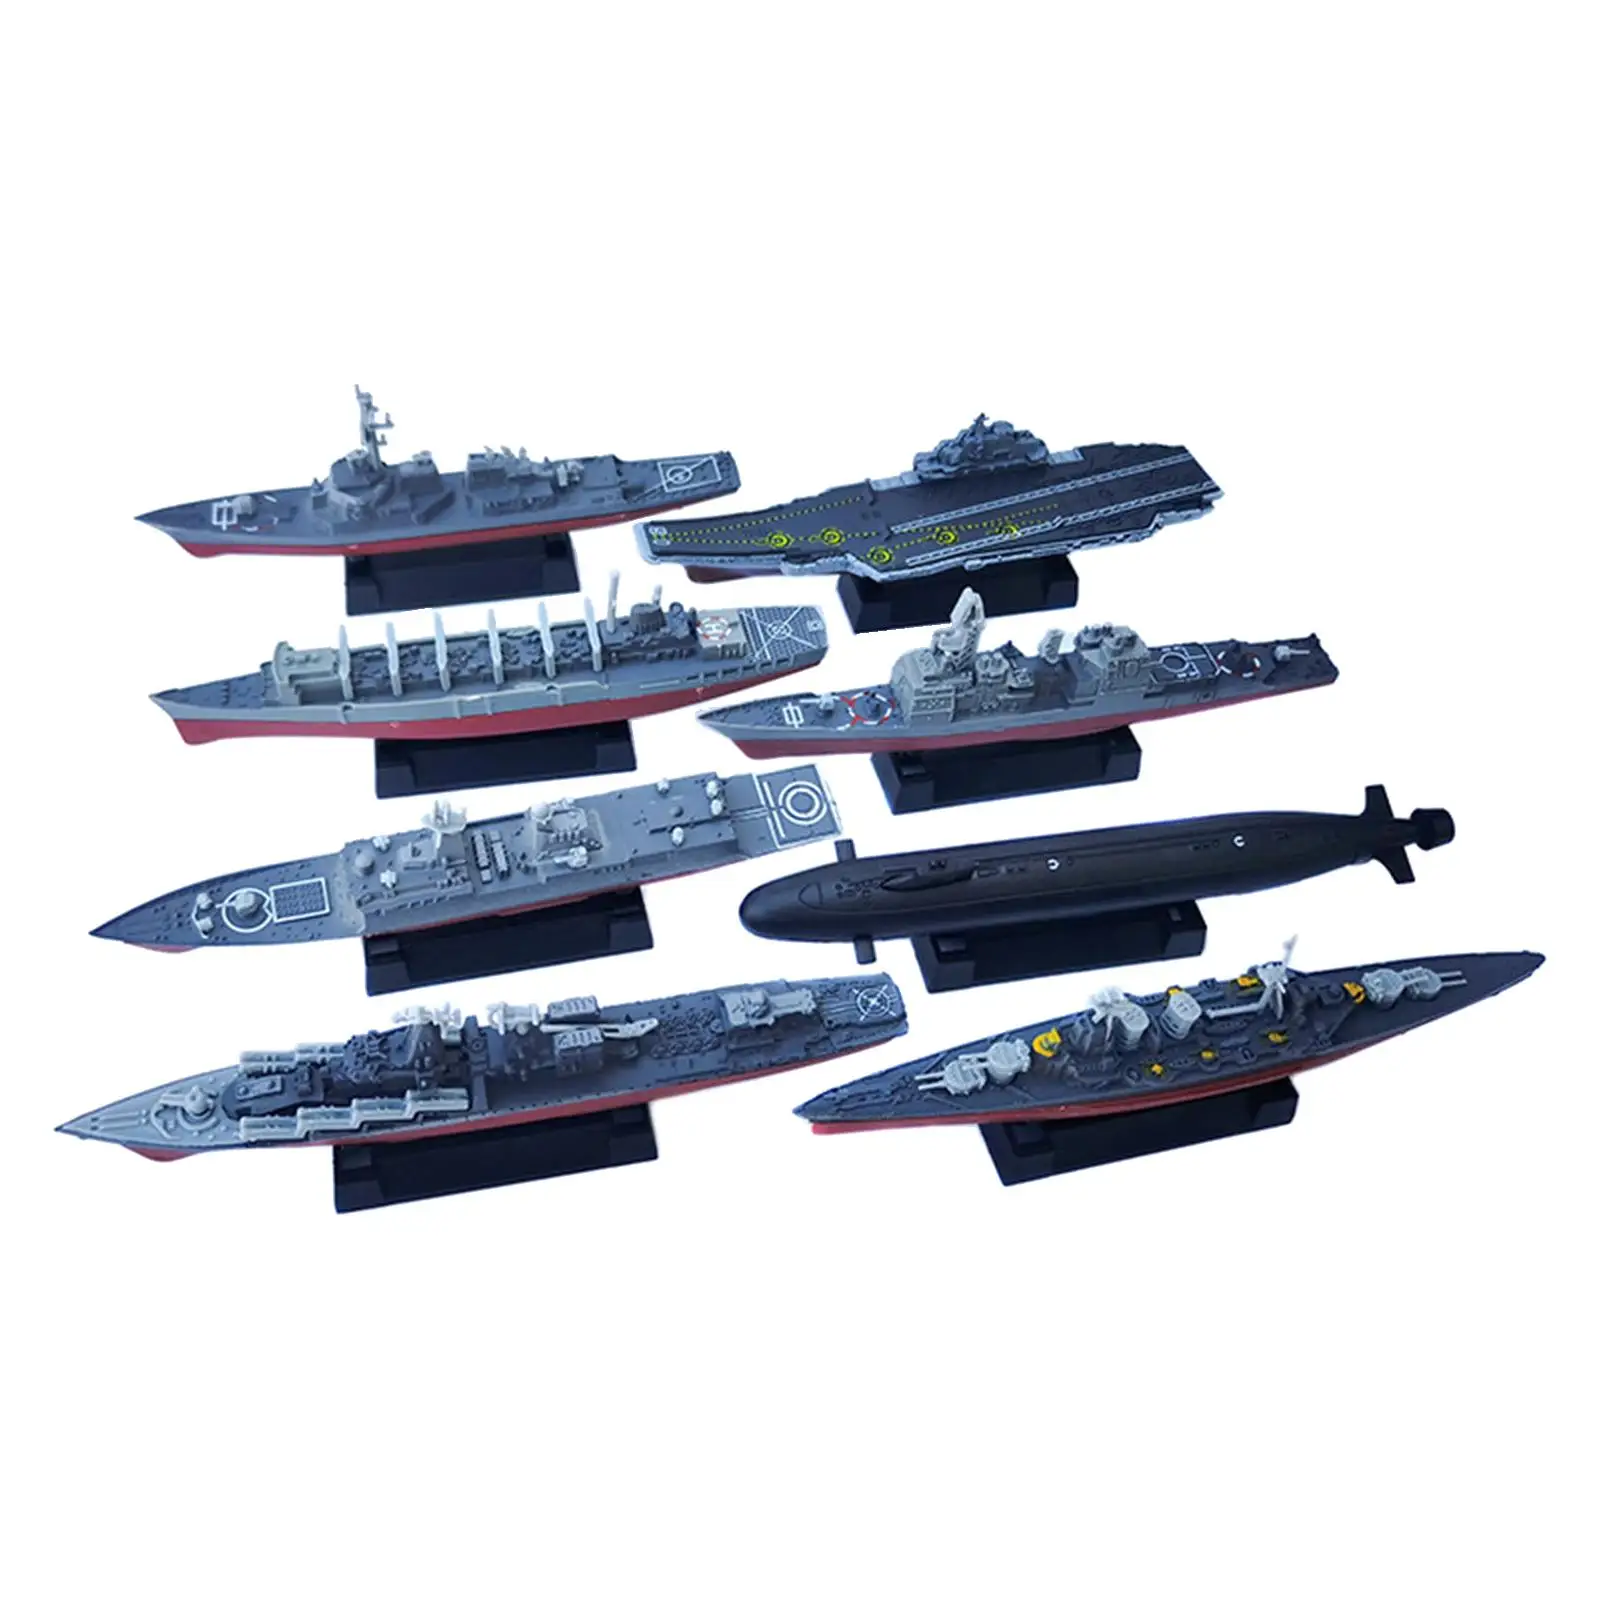 

8 шт. 4D Пазлы Модель корабля корабль набор корабля имитация современного корабля модель корабля игрушка для детей взрослых девочек детей подарки на день рождения